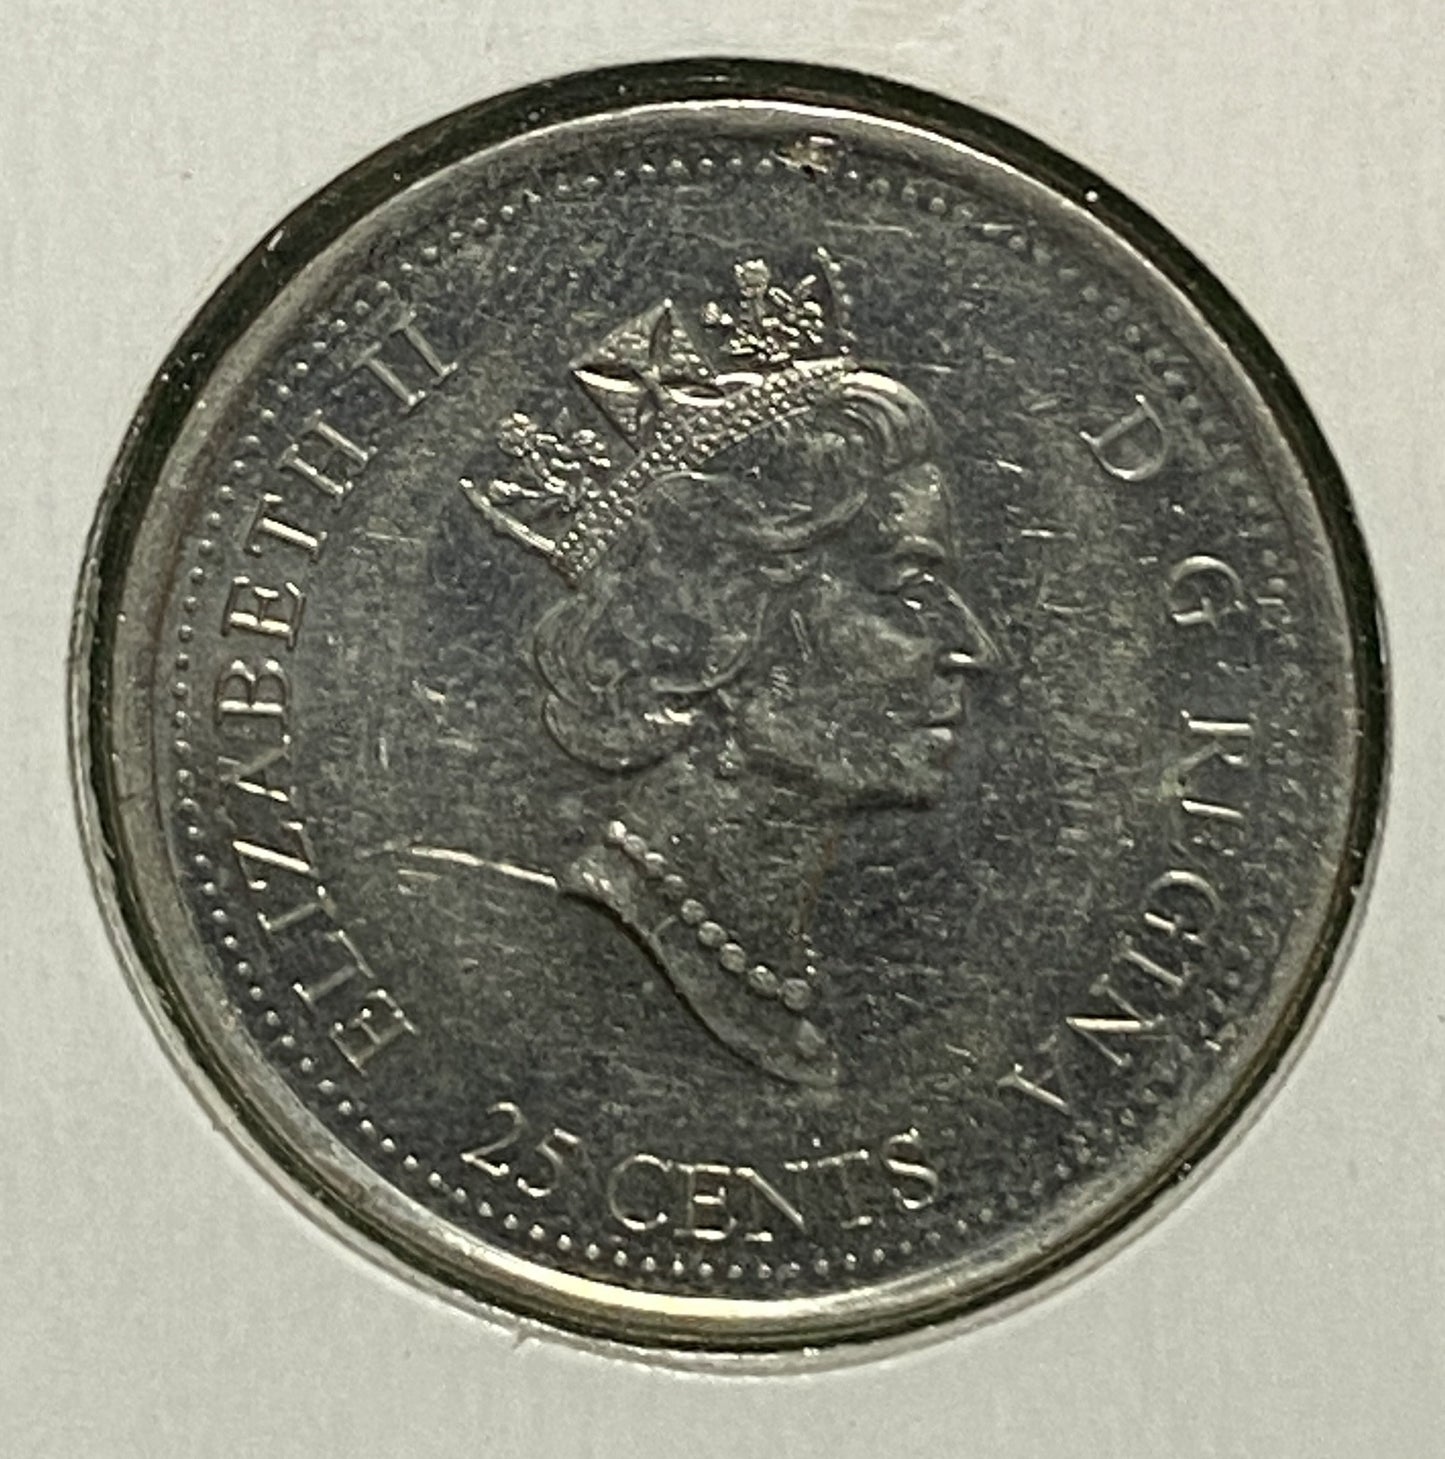 CANADIAN 1999 MILLENNIUM JULY Queen Elizabeth II  25 CENTS QUARTER COIN AU / UNC CONDITION